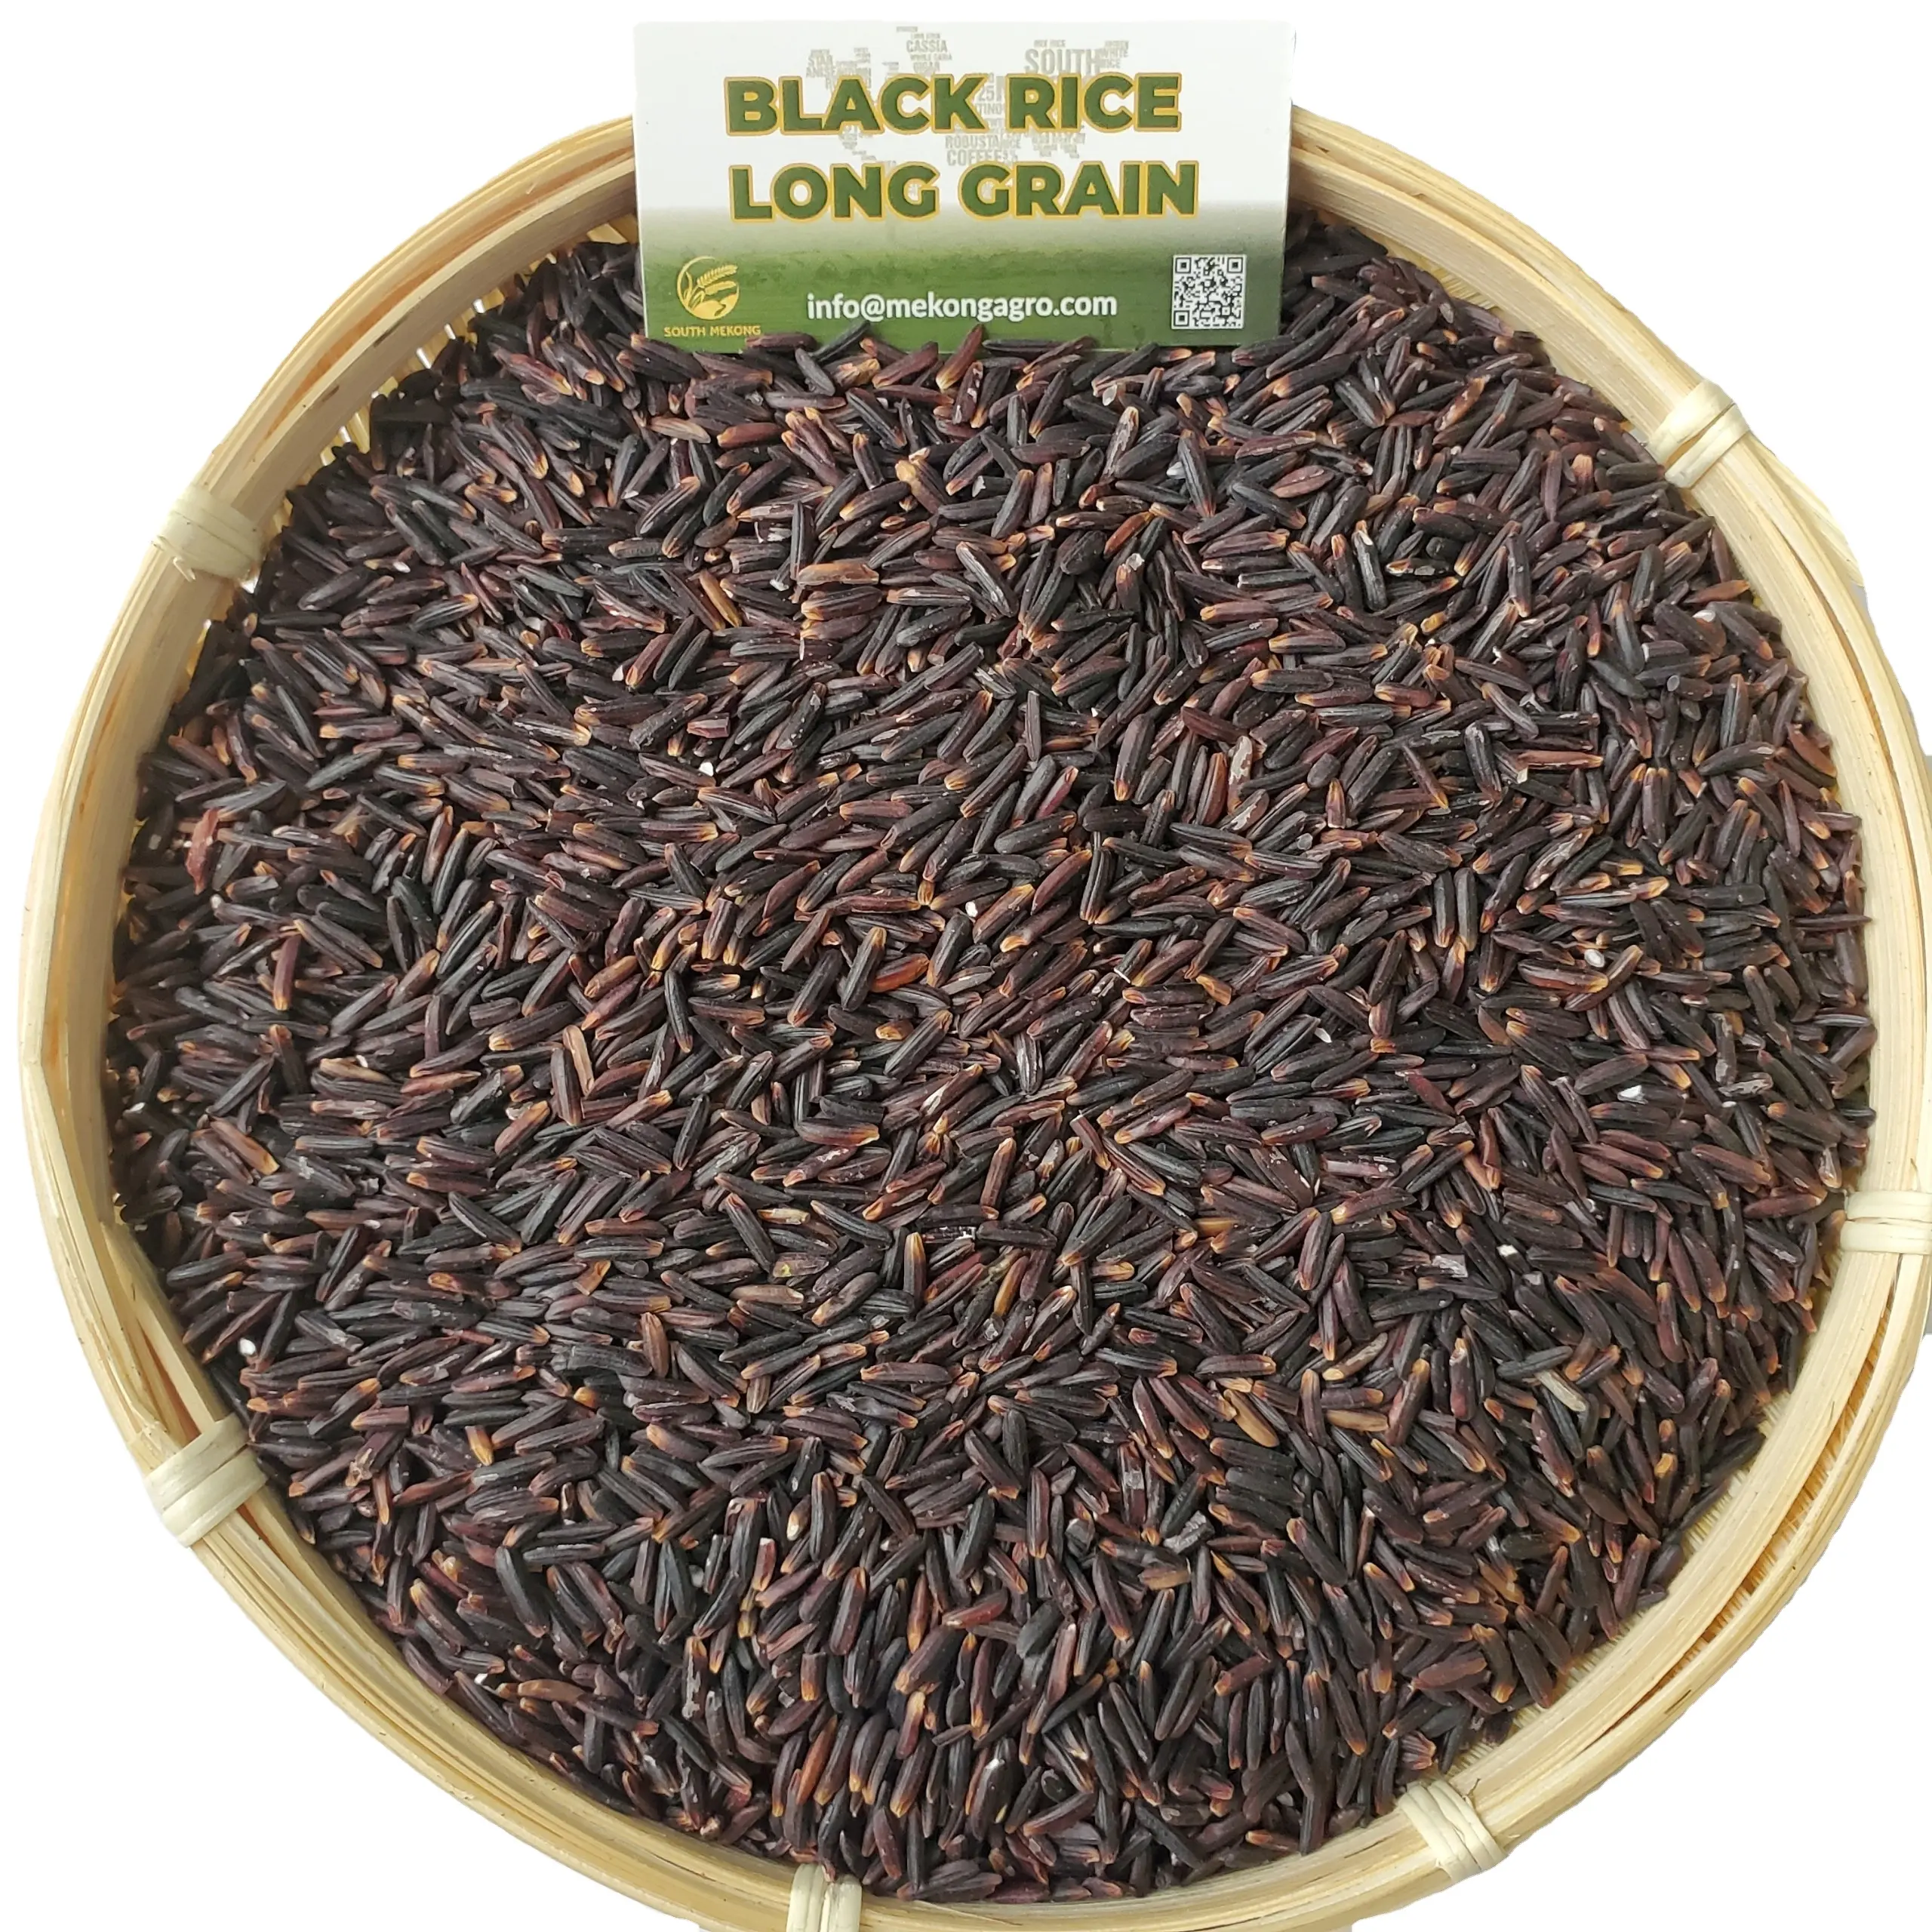 Arroz negro: arroz saludable de primera calidad para el mercado europeo suministrado por el principal exportador mundial de arroz